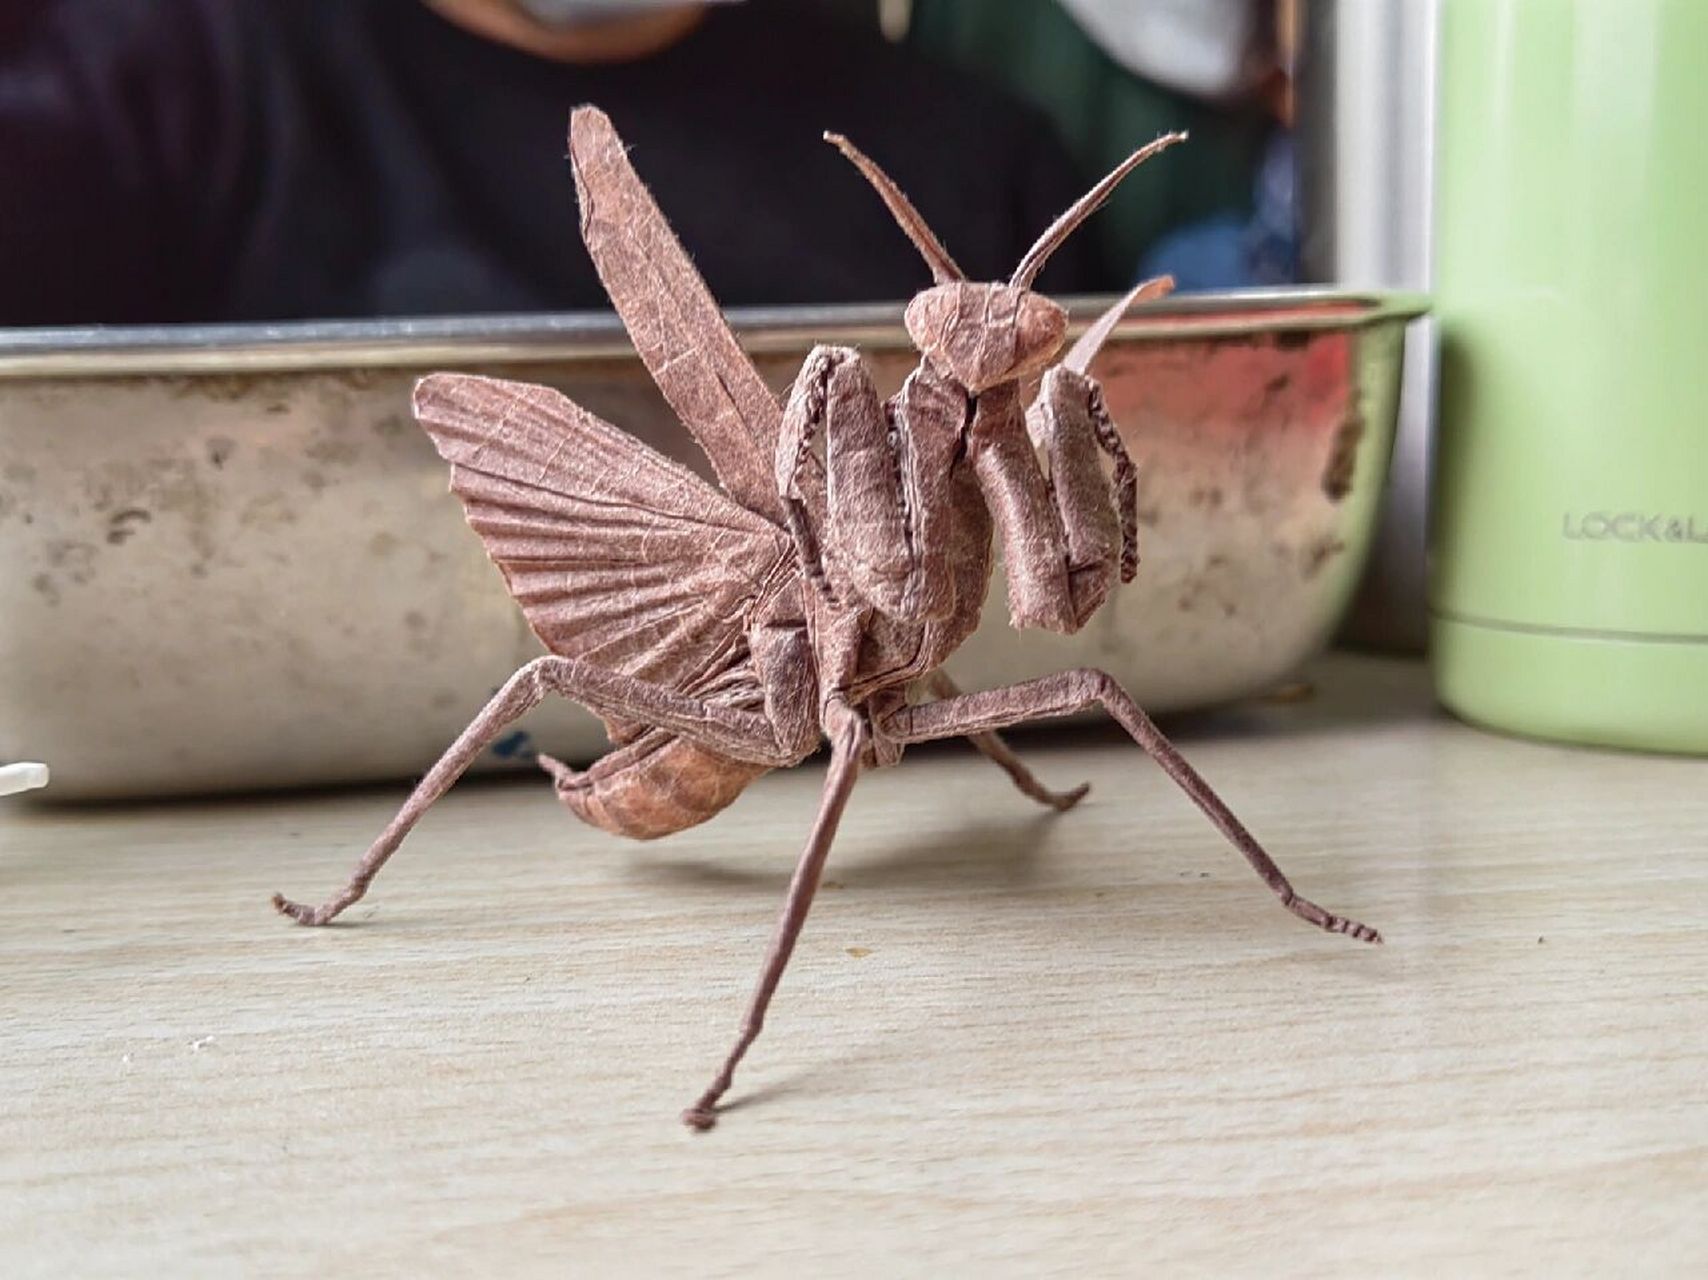 用一张纸折一只大螳螂图片